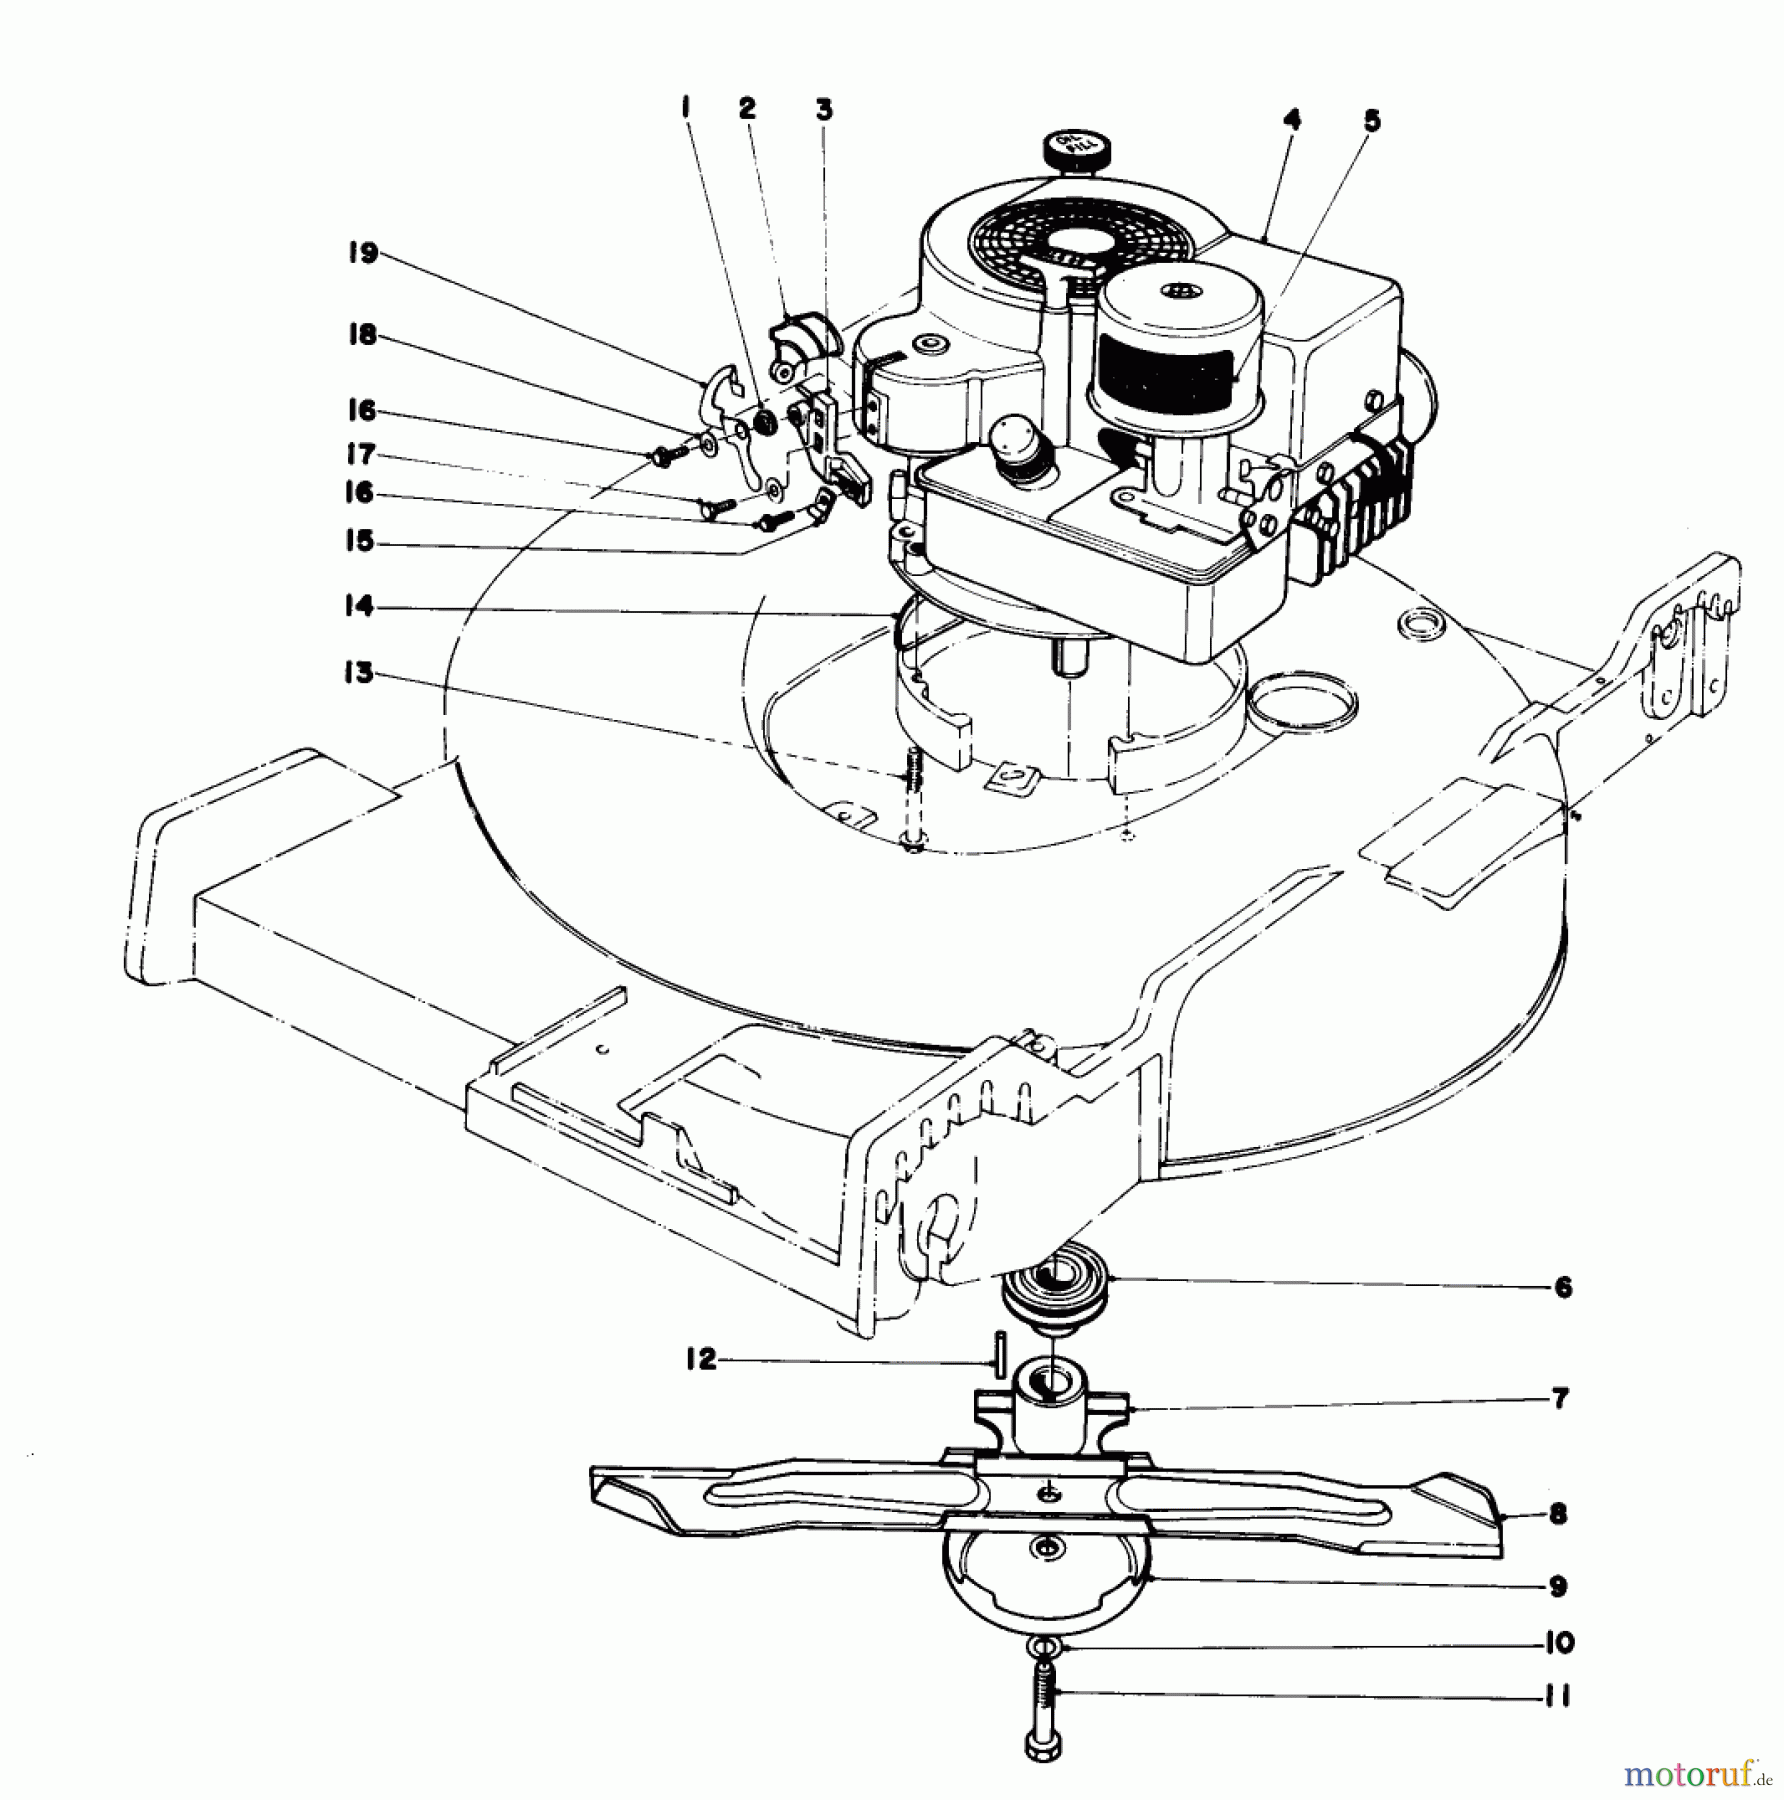  Toro Neu Mowers, Walk-Behind Seite 1 20750 - Toro Lawnmower, 1978 (8000001-8999999) ENGINE ASSEMBLY